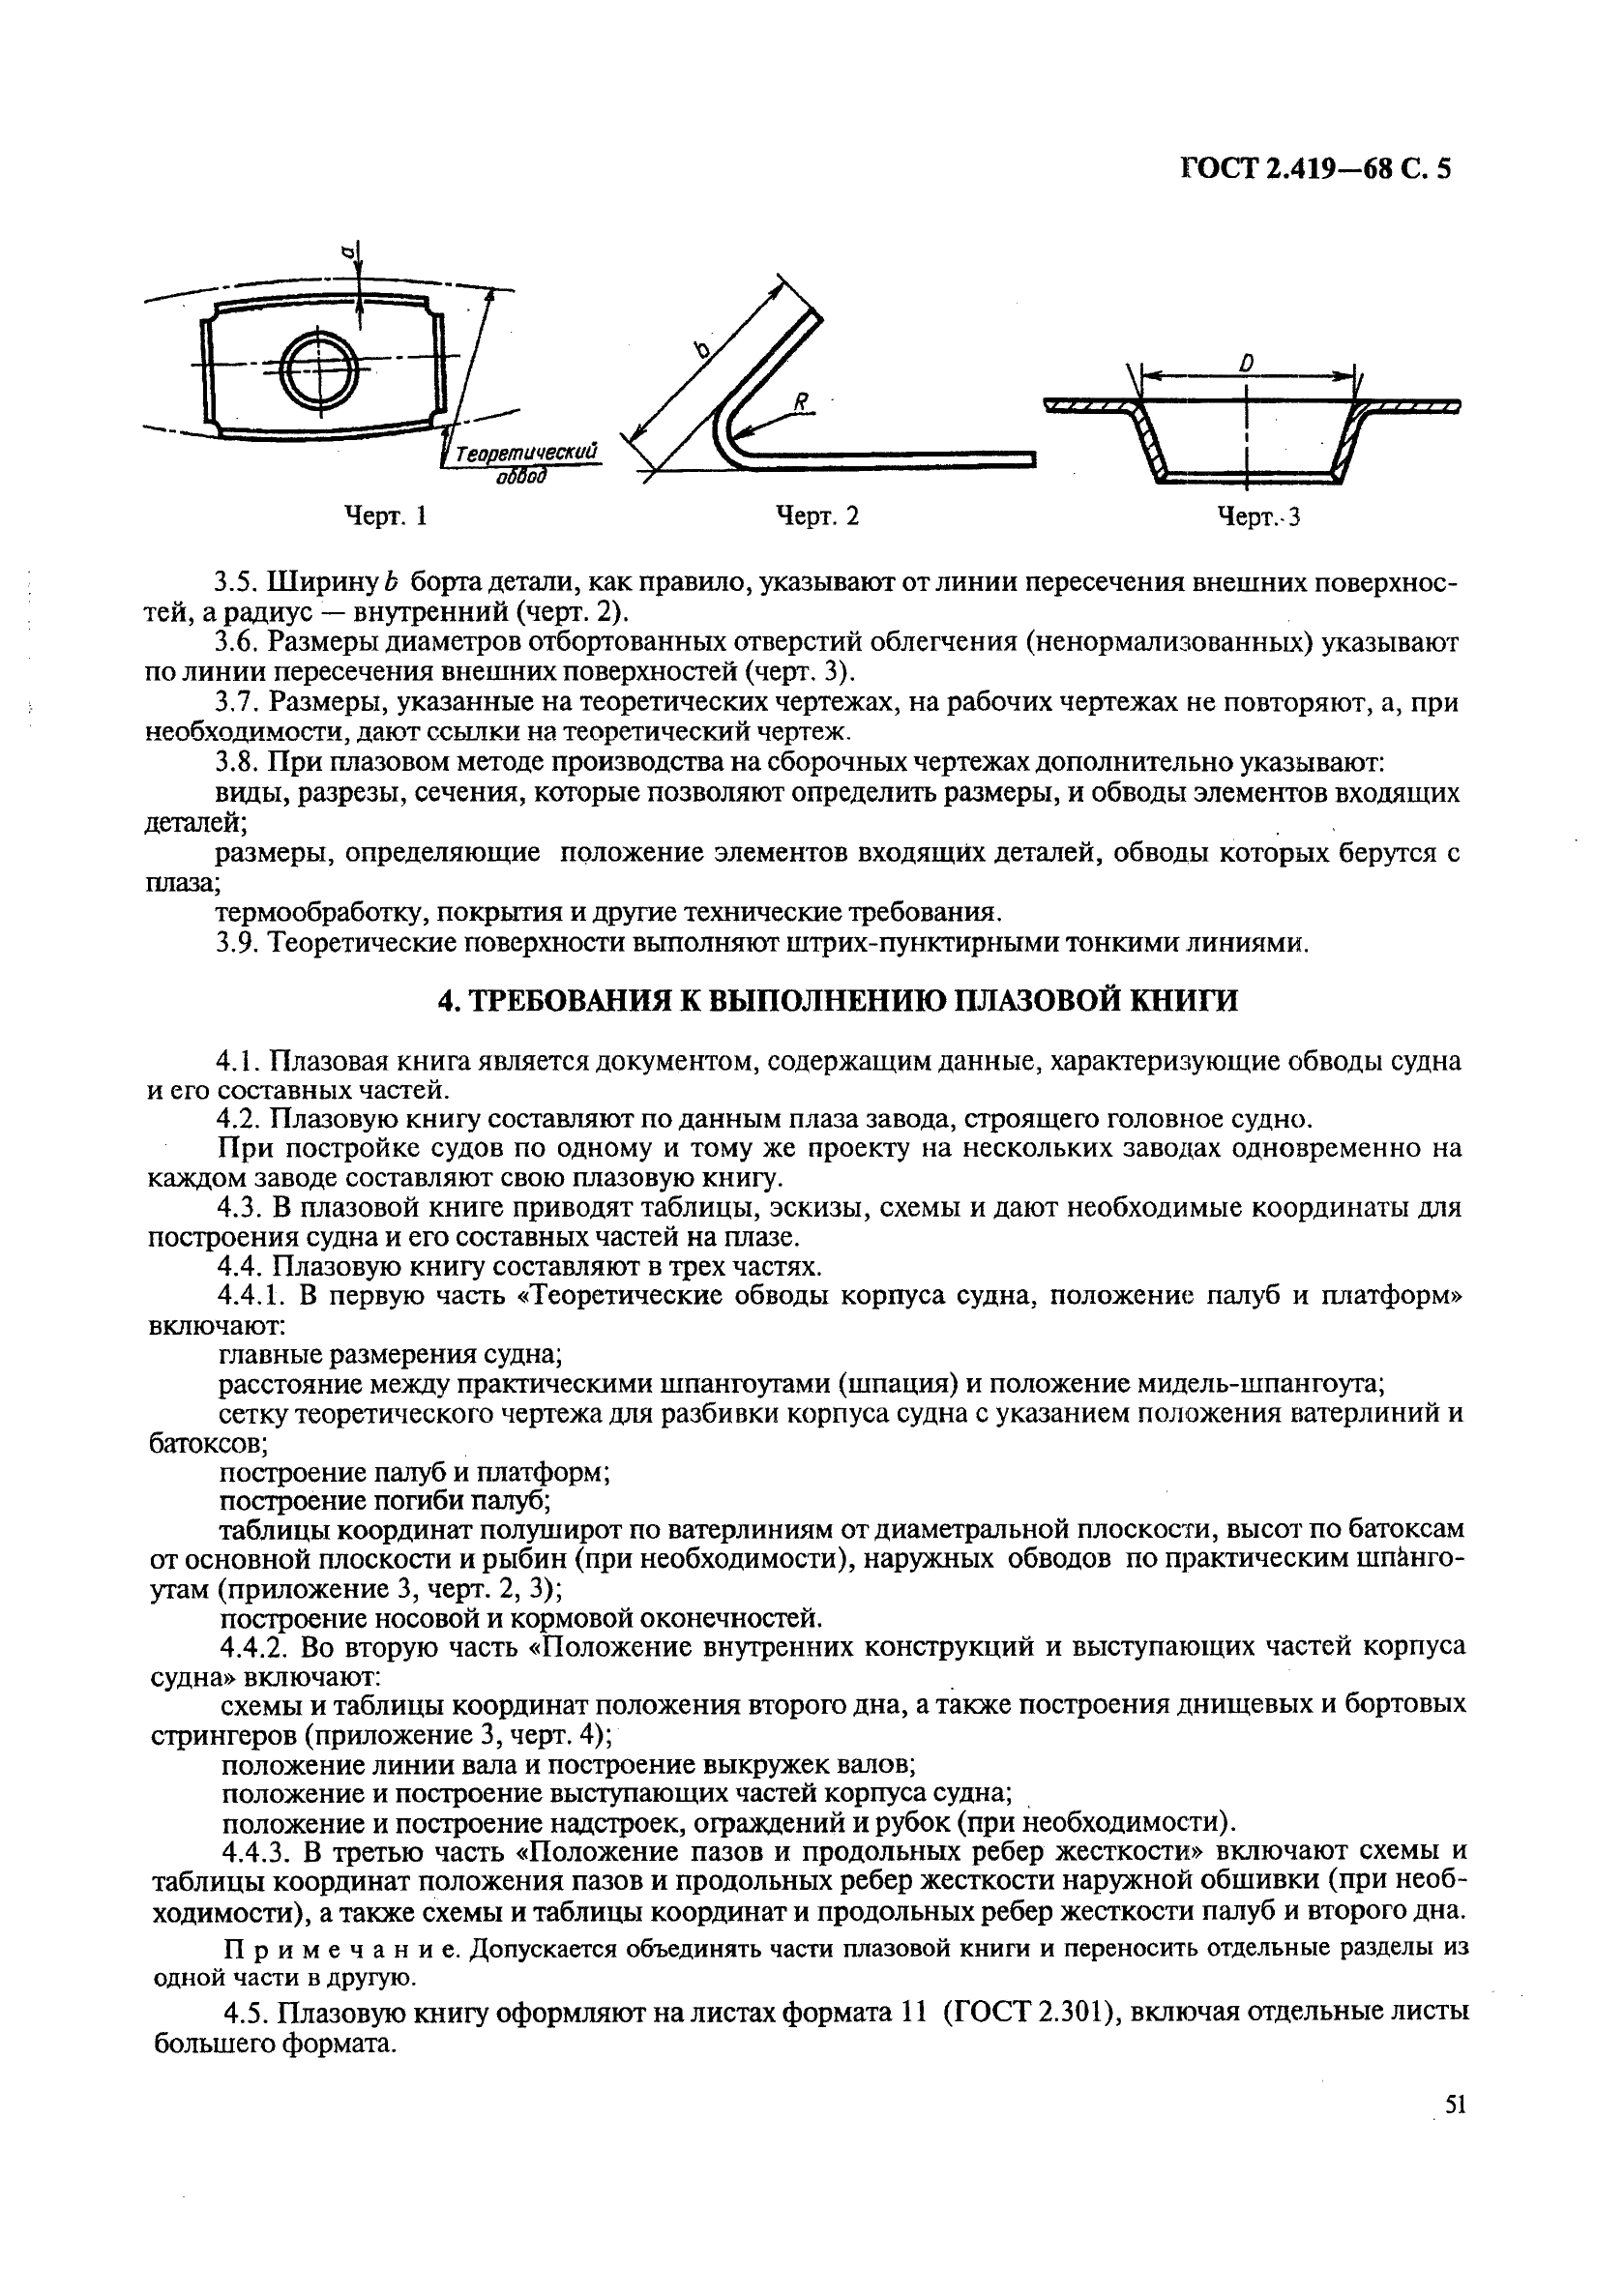 ГОСТ 2.419-68 Единая система конструкторской документации. Правила выполнения документации при плазовом методе производства (фото 5 из 18)